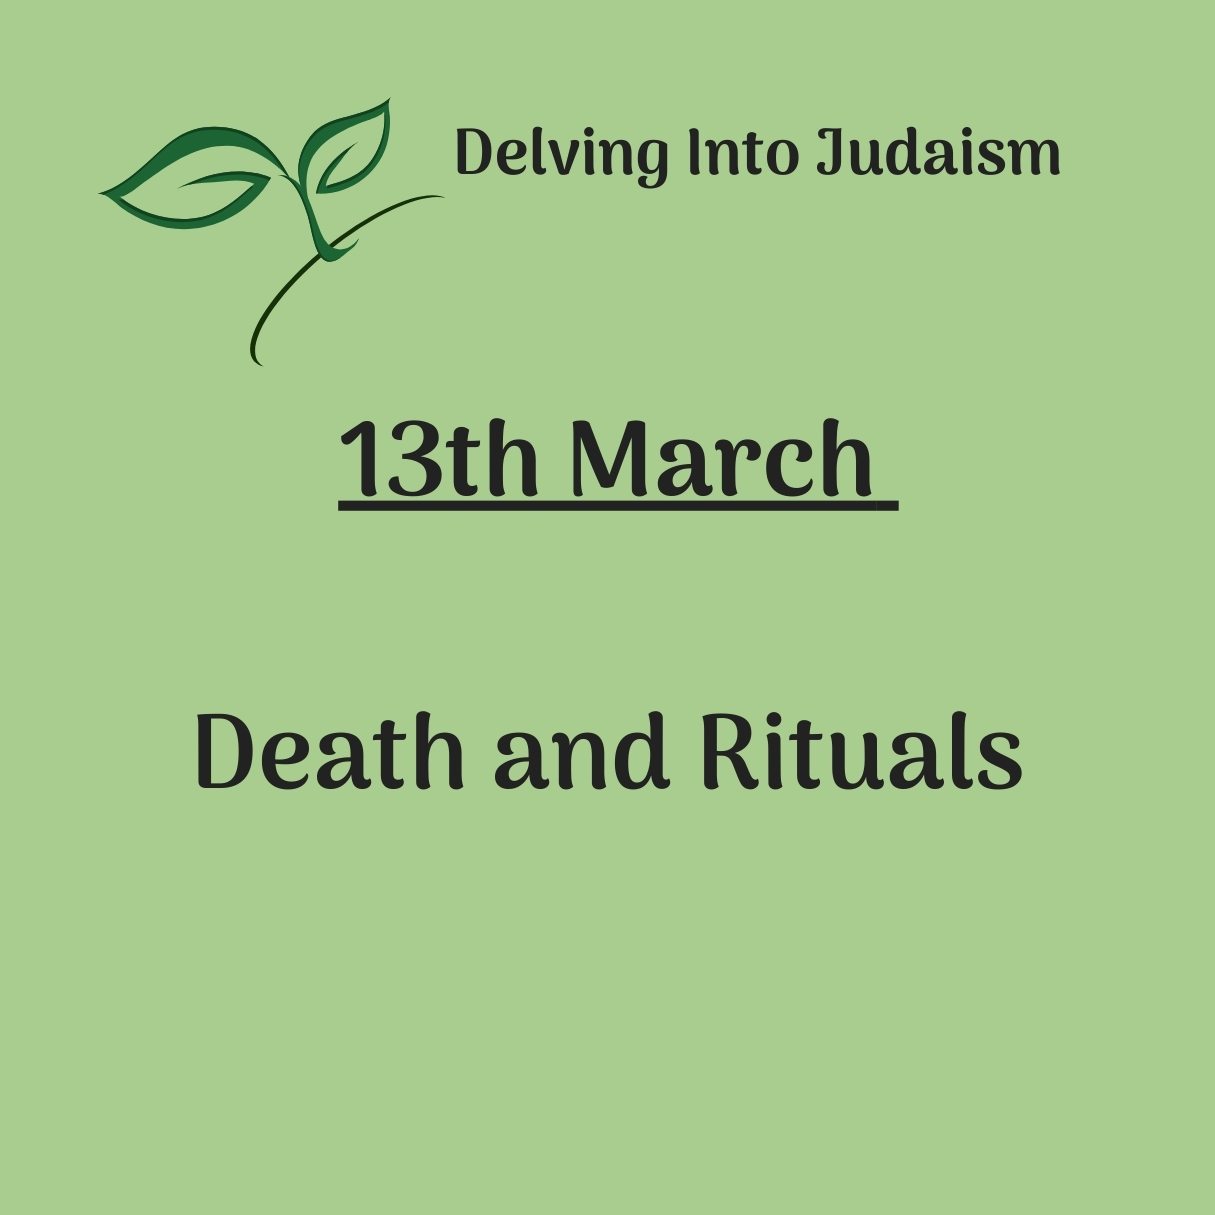 Delving into Judaism